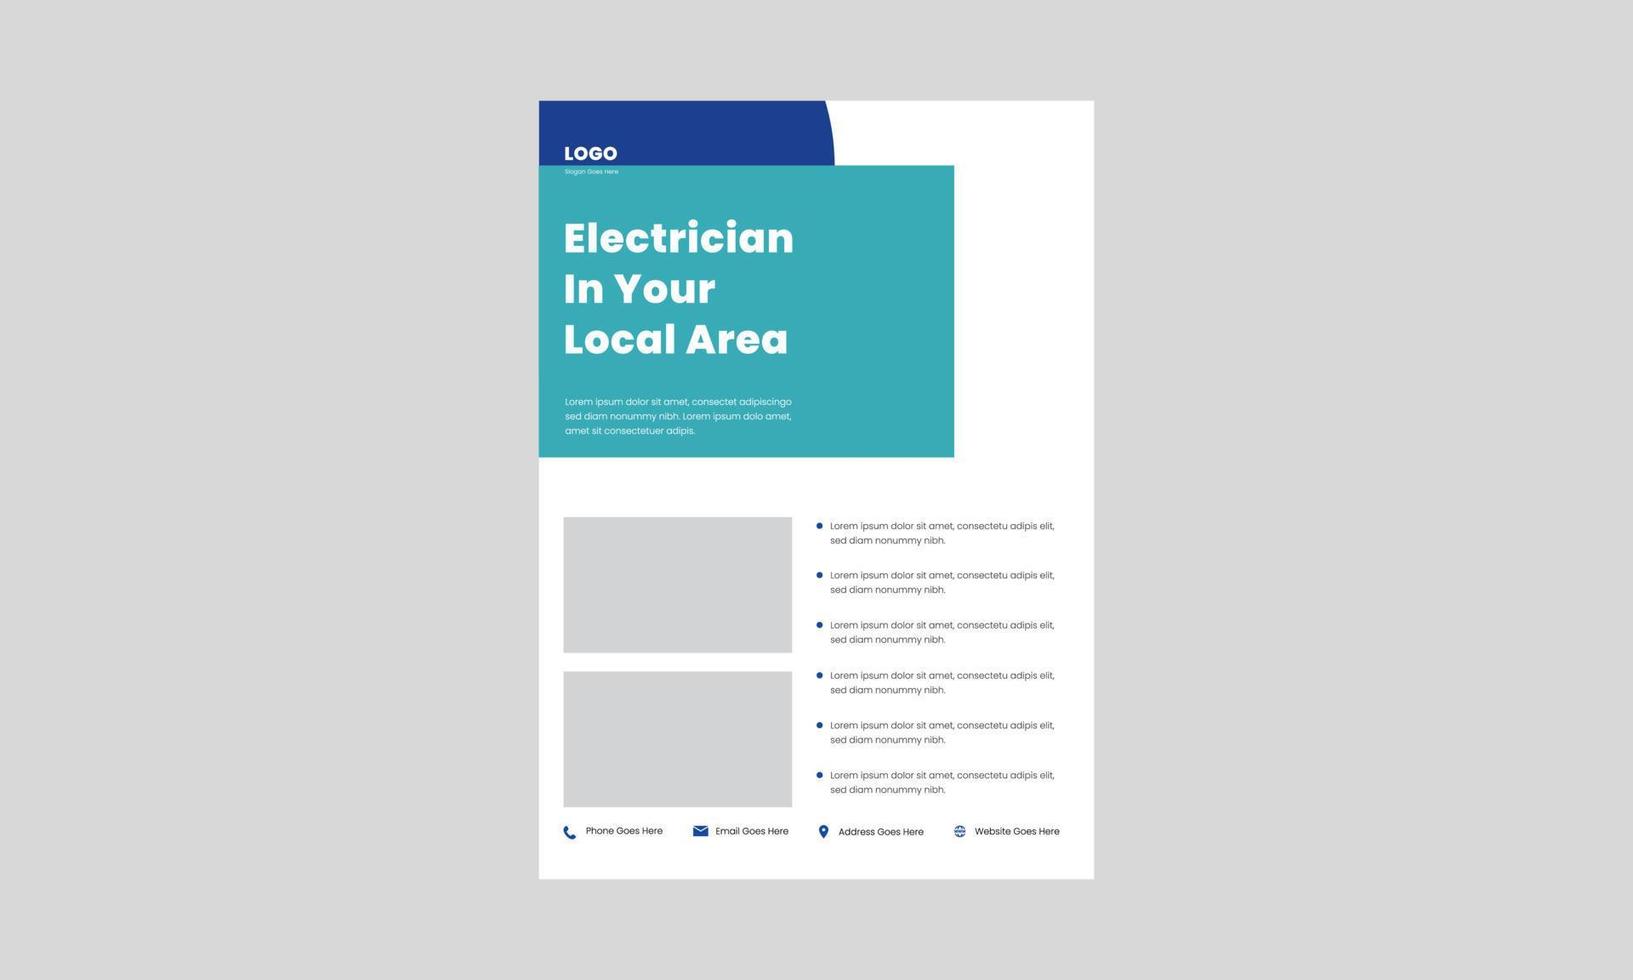 elektriker expert på elektrisk service flygblad designmall. professionell affisch för elektriska tjänster, broschyrdesign. vektor